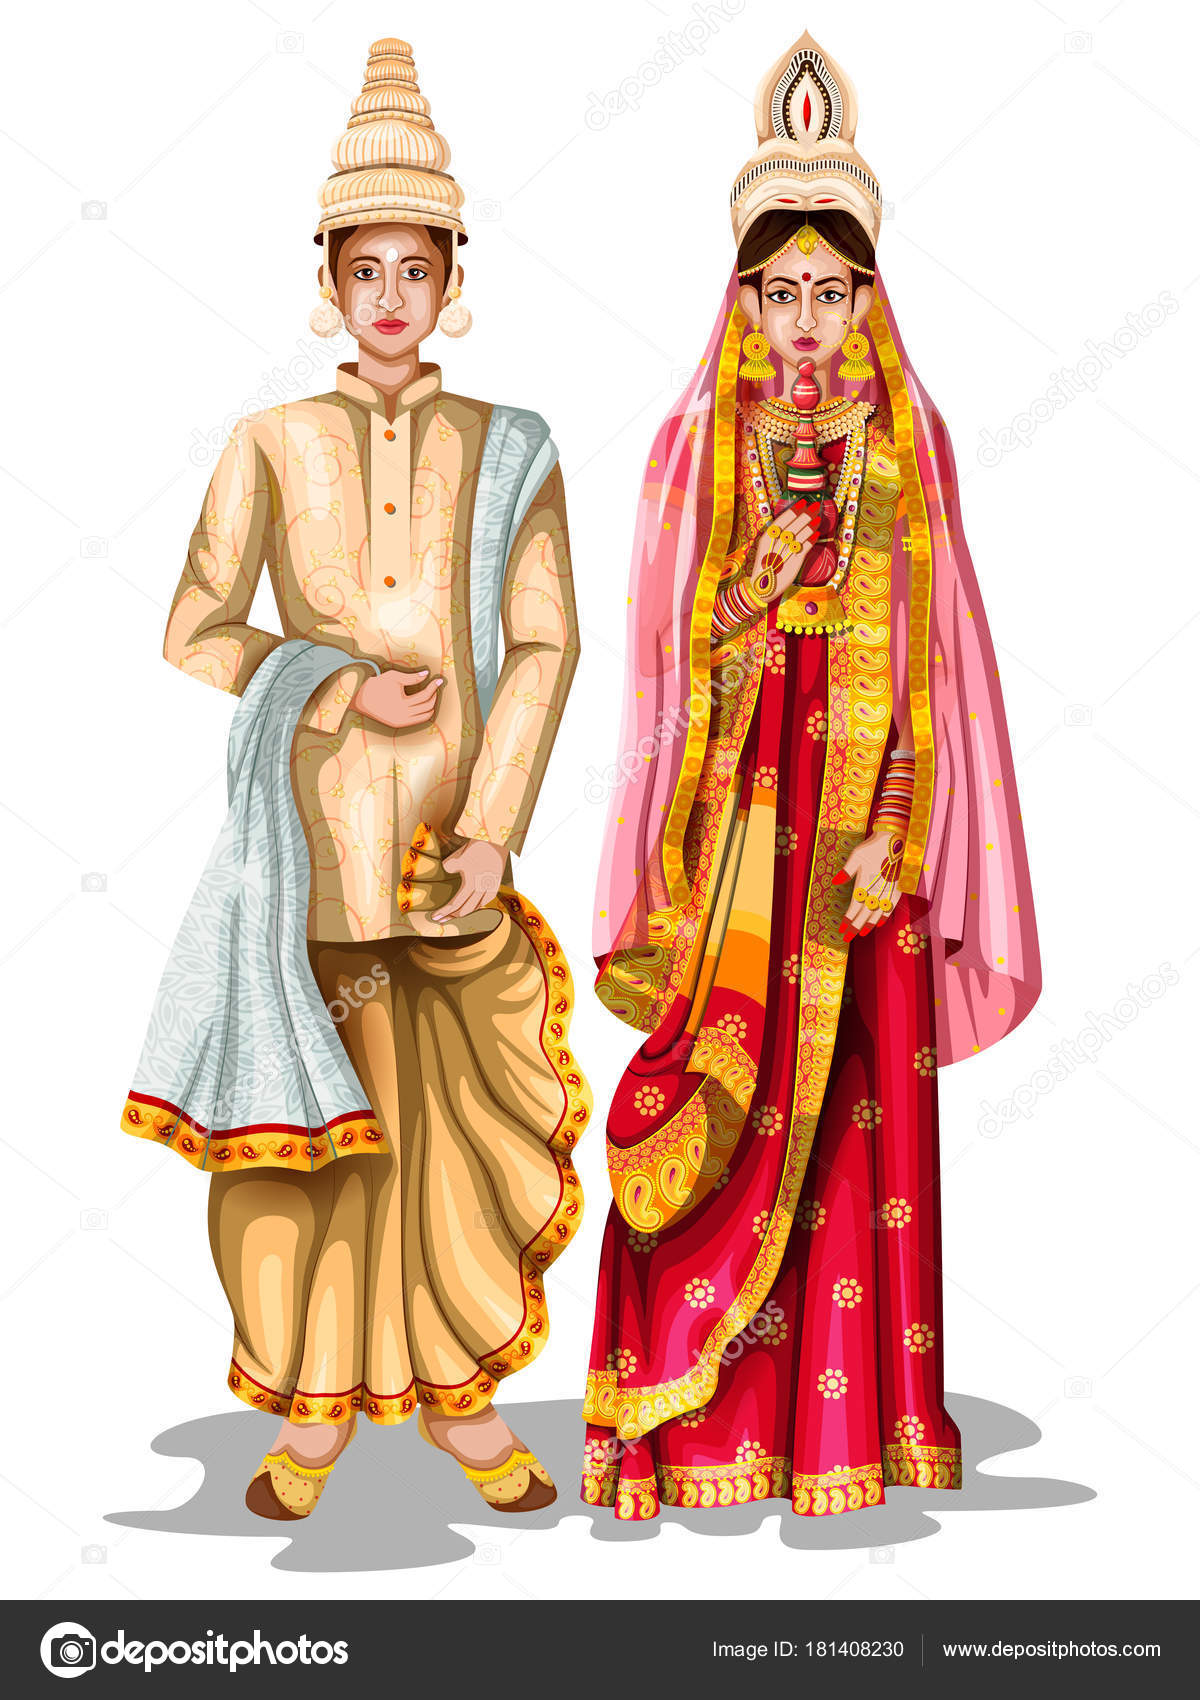 Bengali couple Vector Art Stock Images | Depositphotos